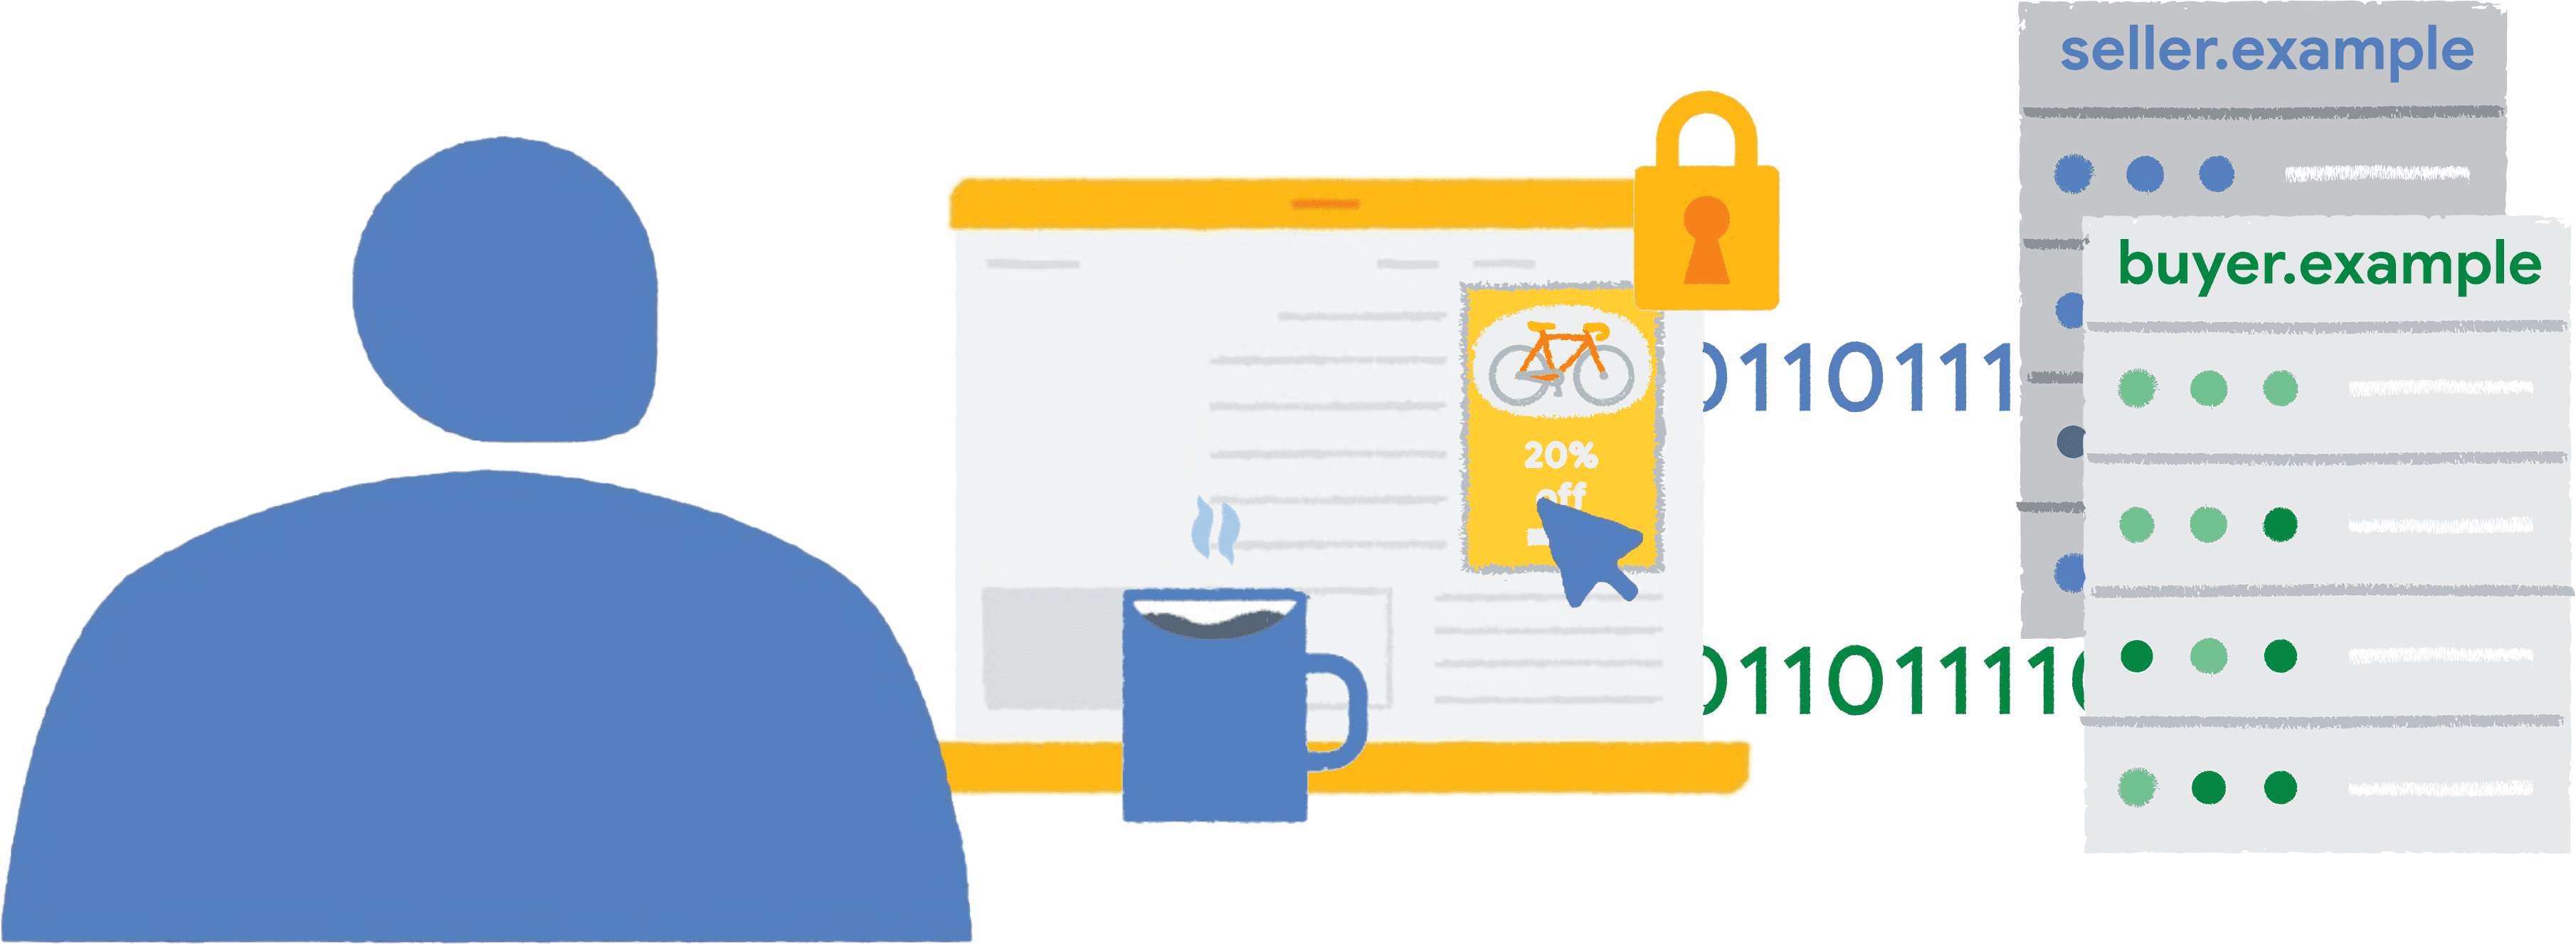 ニュース ウェブサイトで、フェンスの枠内の自転車の広告をクリックしている人物と、販売者と購入者にレポートデータが渡されているイラスト。